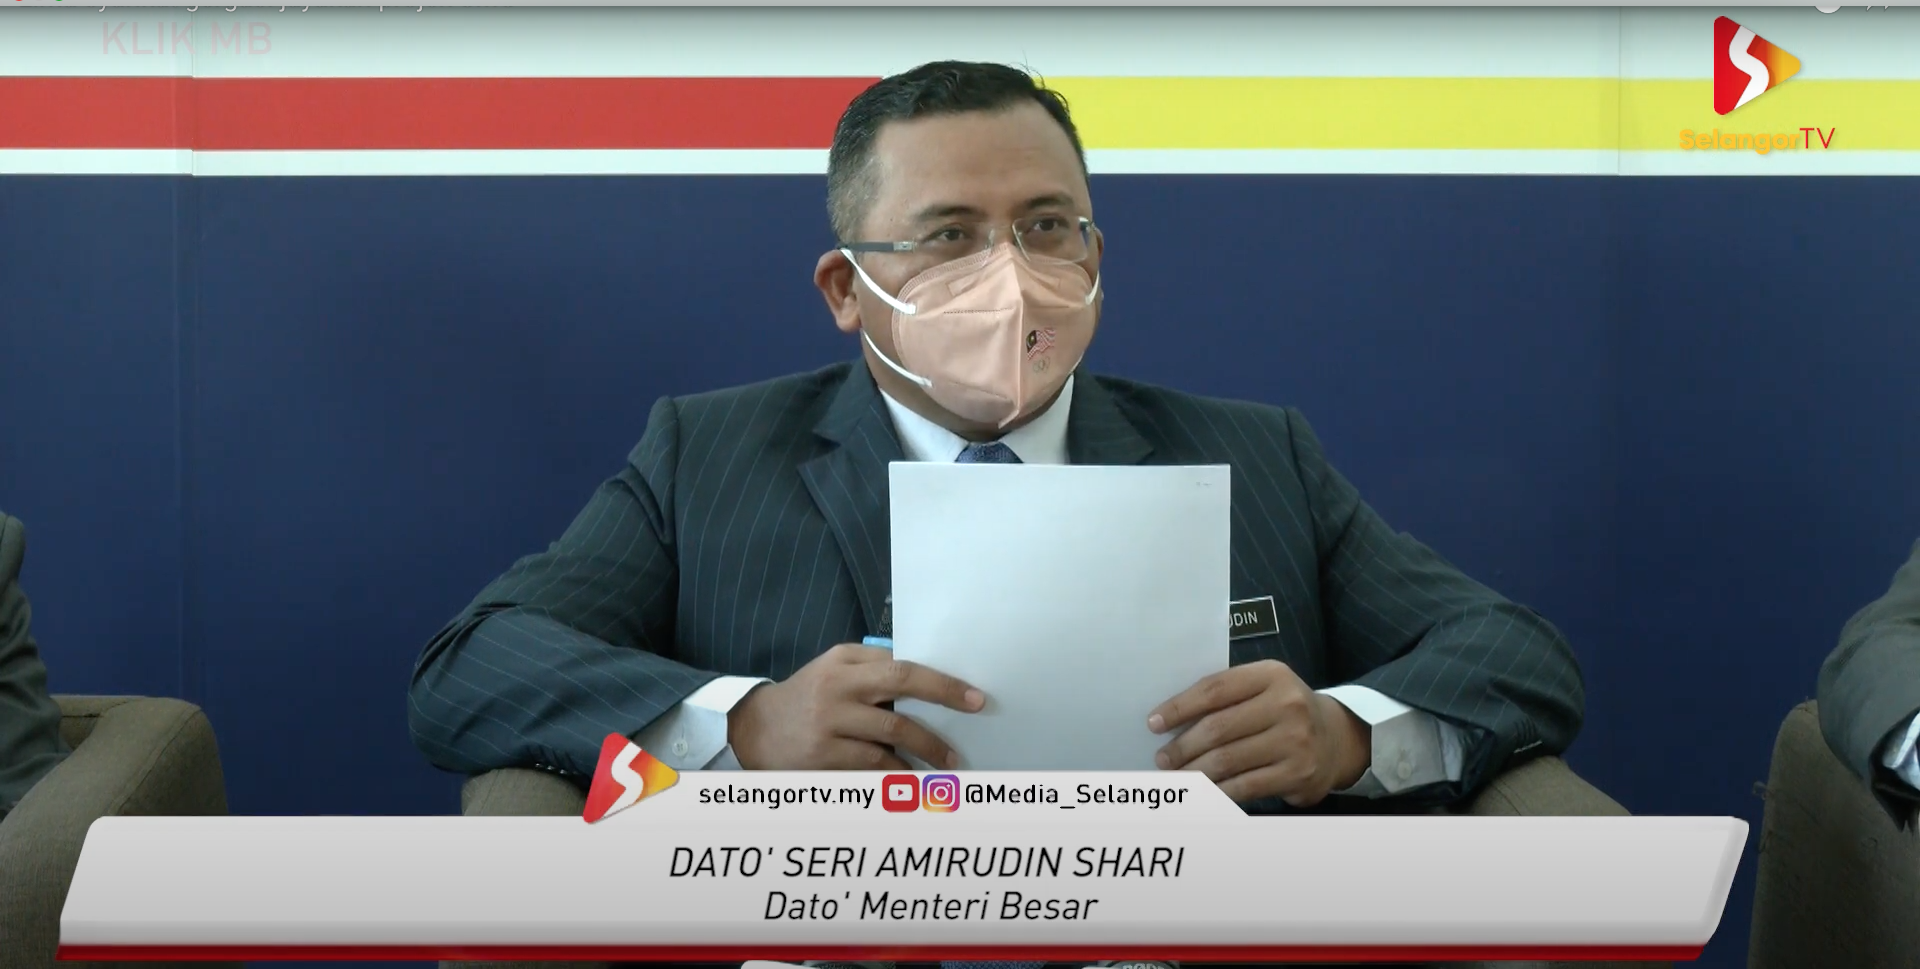 Lima Syarikat Gergasi Jayakan Projek SMG – SelangorTV